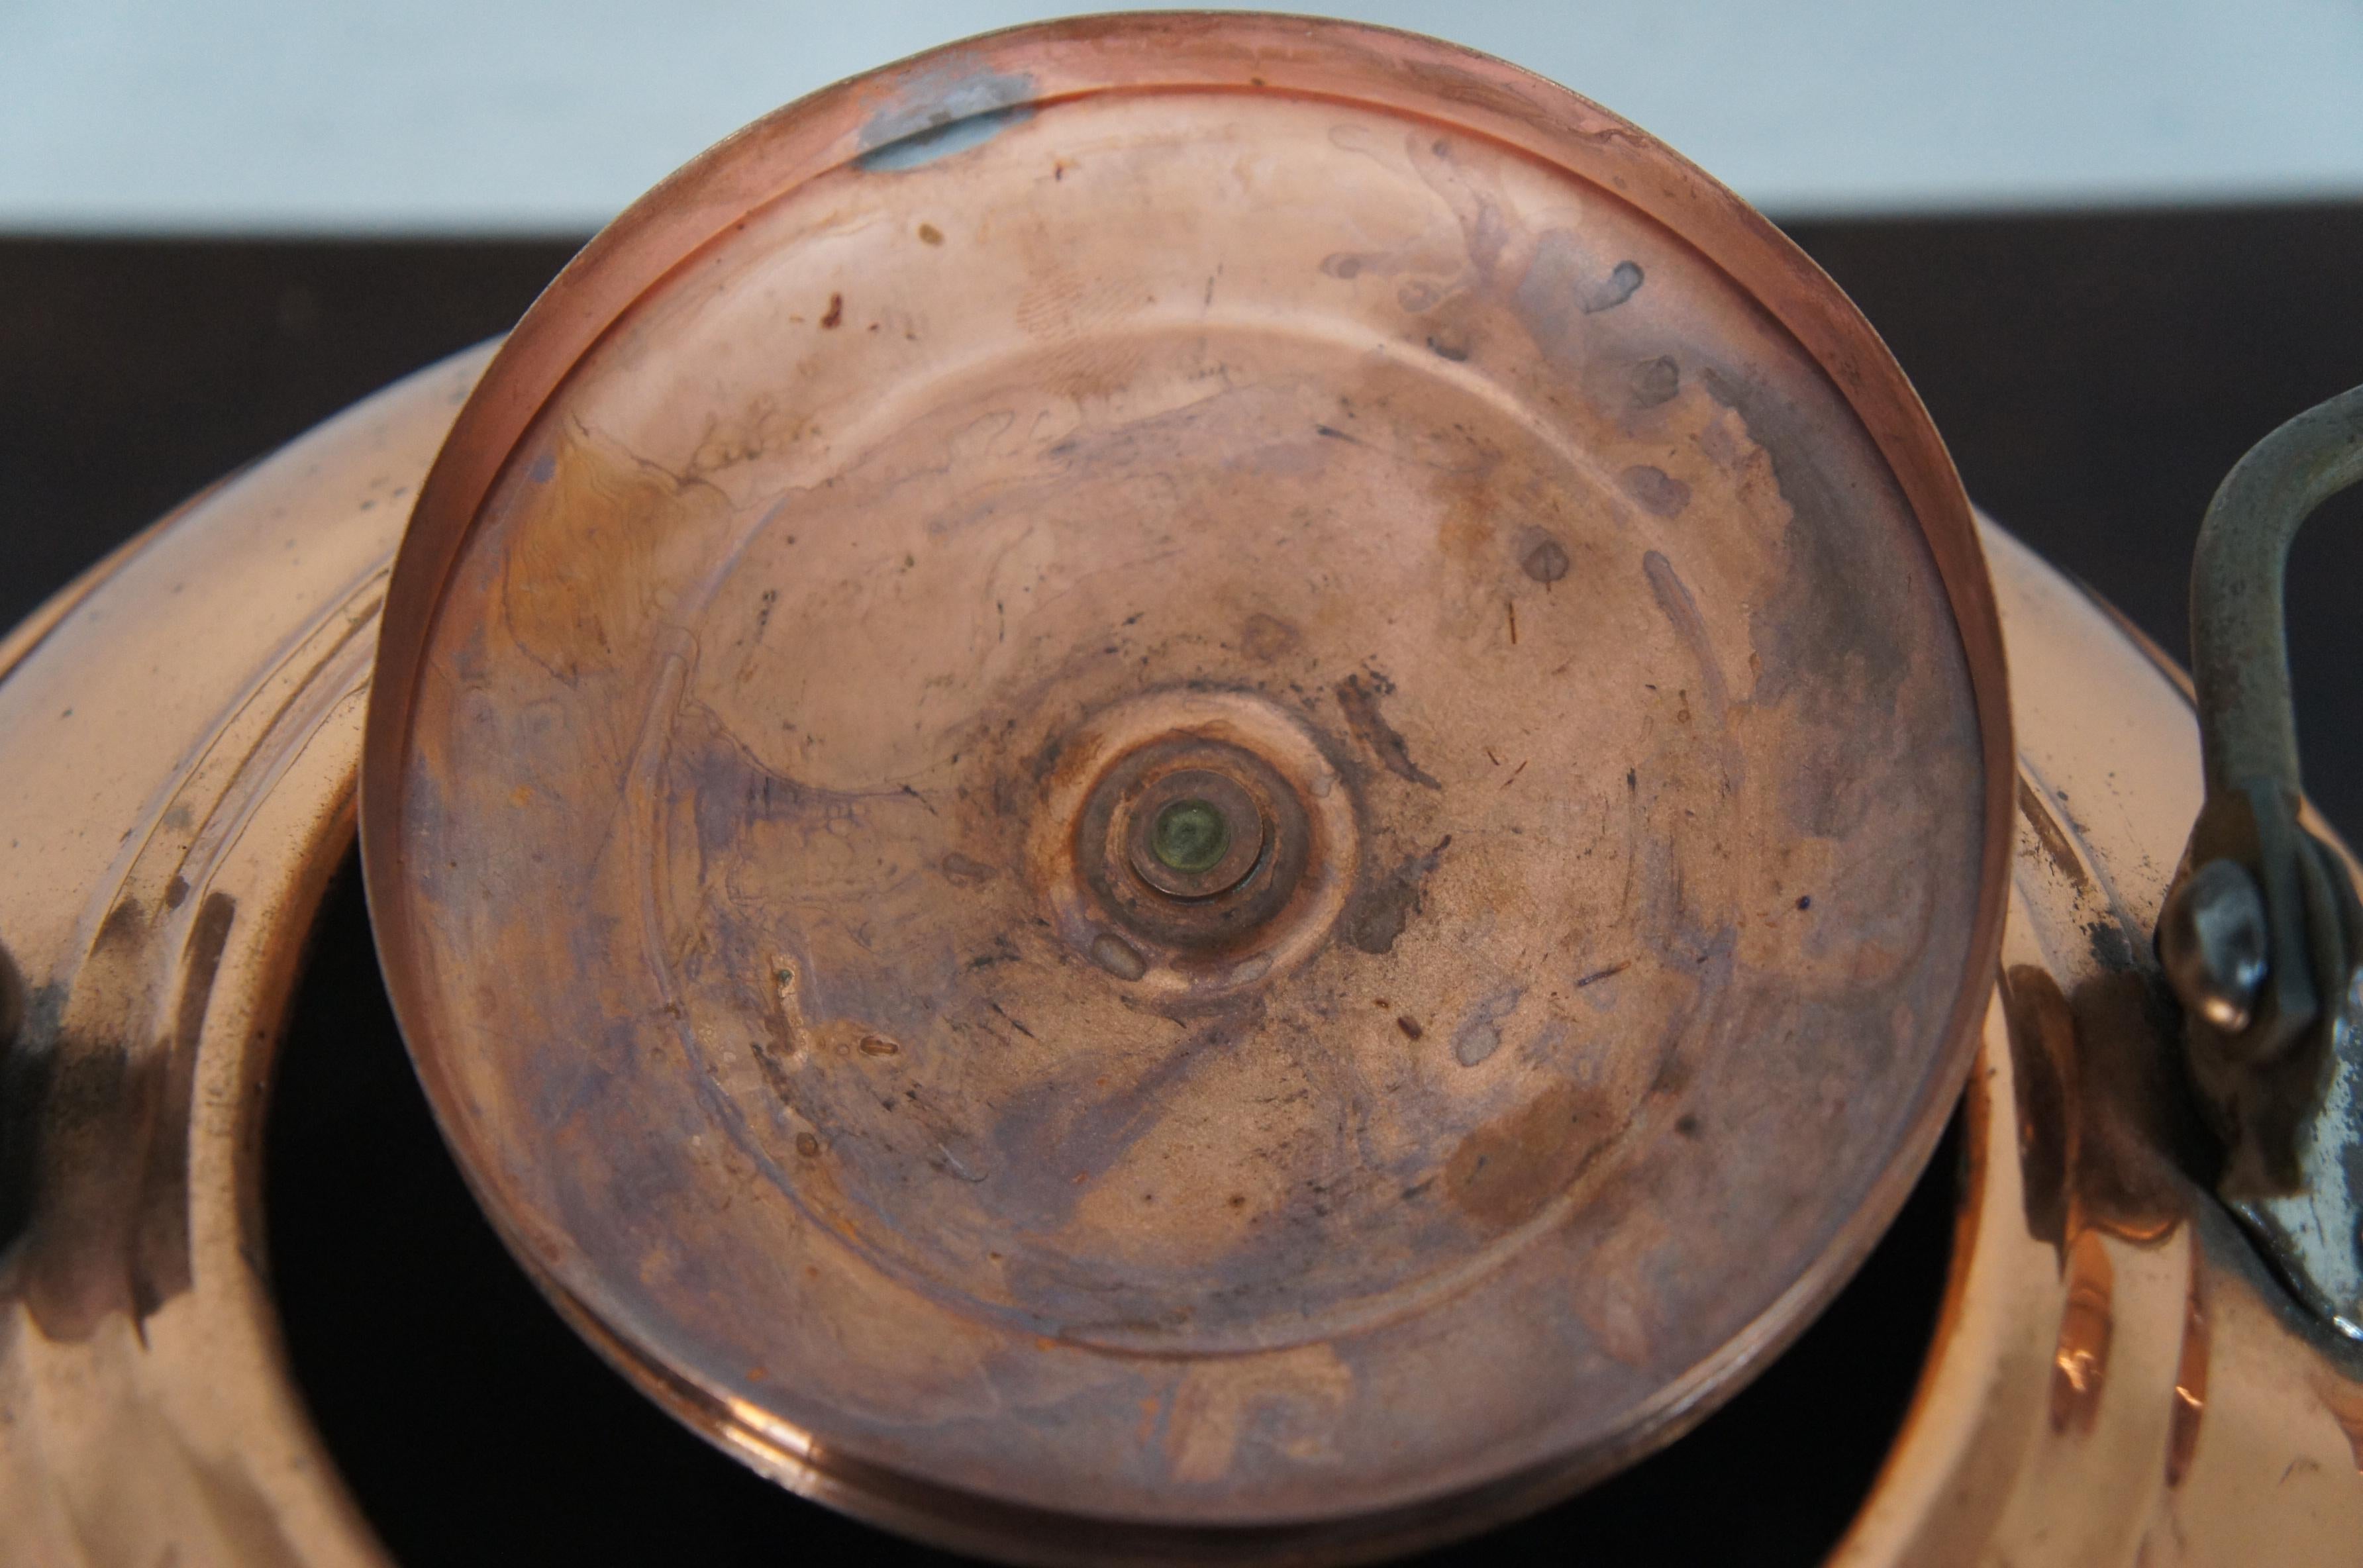 Antique Copper Tea Kettle Coffee Pot Straight Spout Rustic Wooden Handle 6